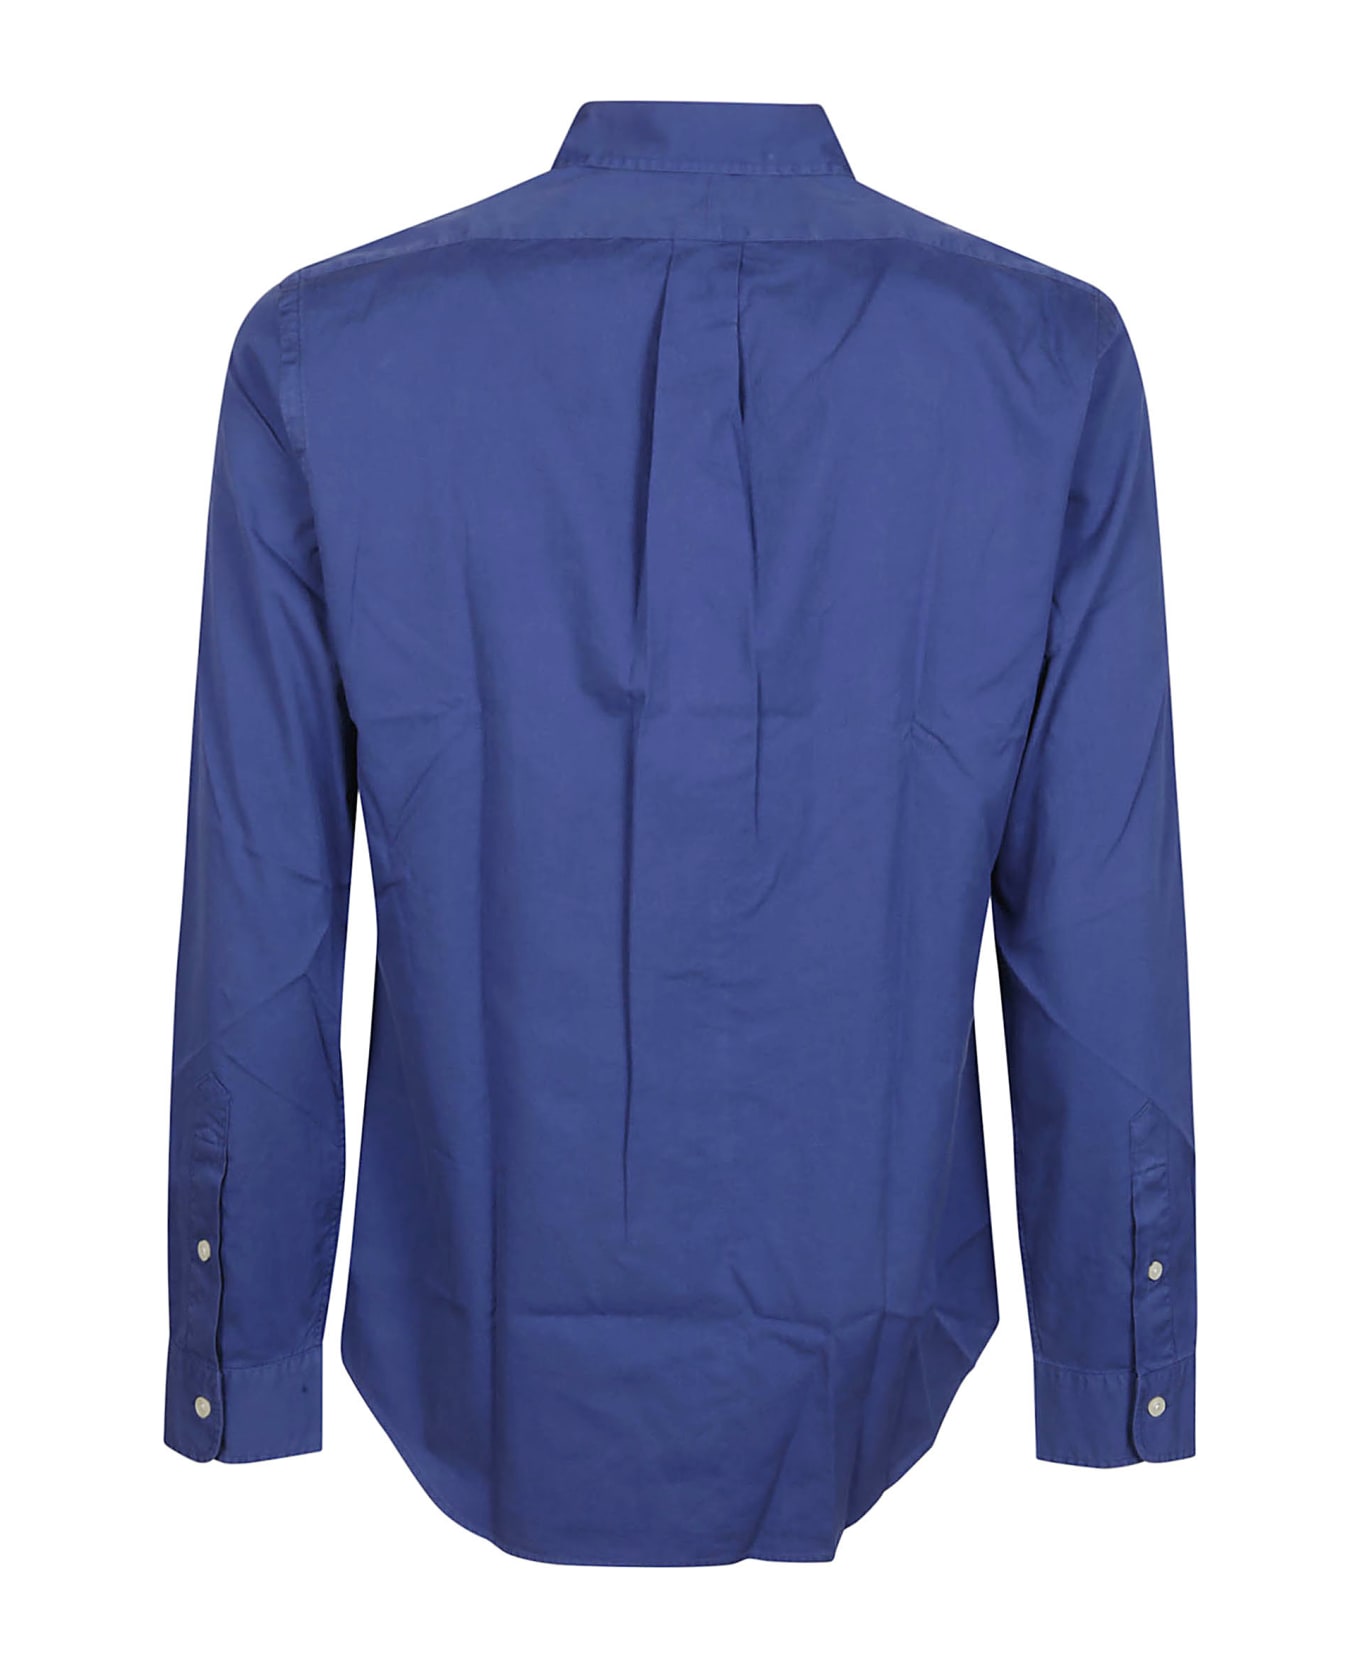 Polo Ralph Lauren Long Sleeve Sport Shirt - Blue